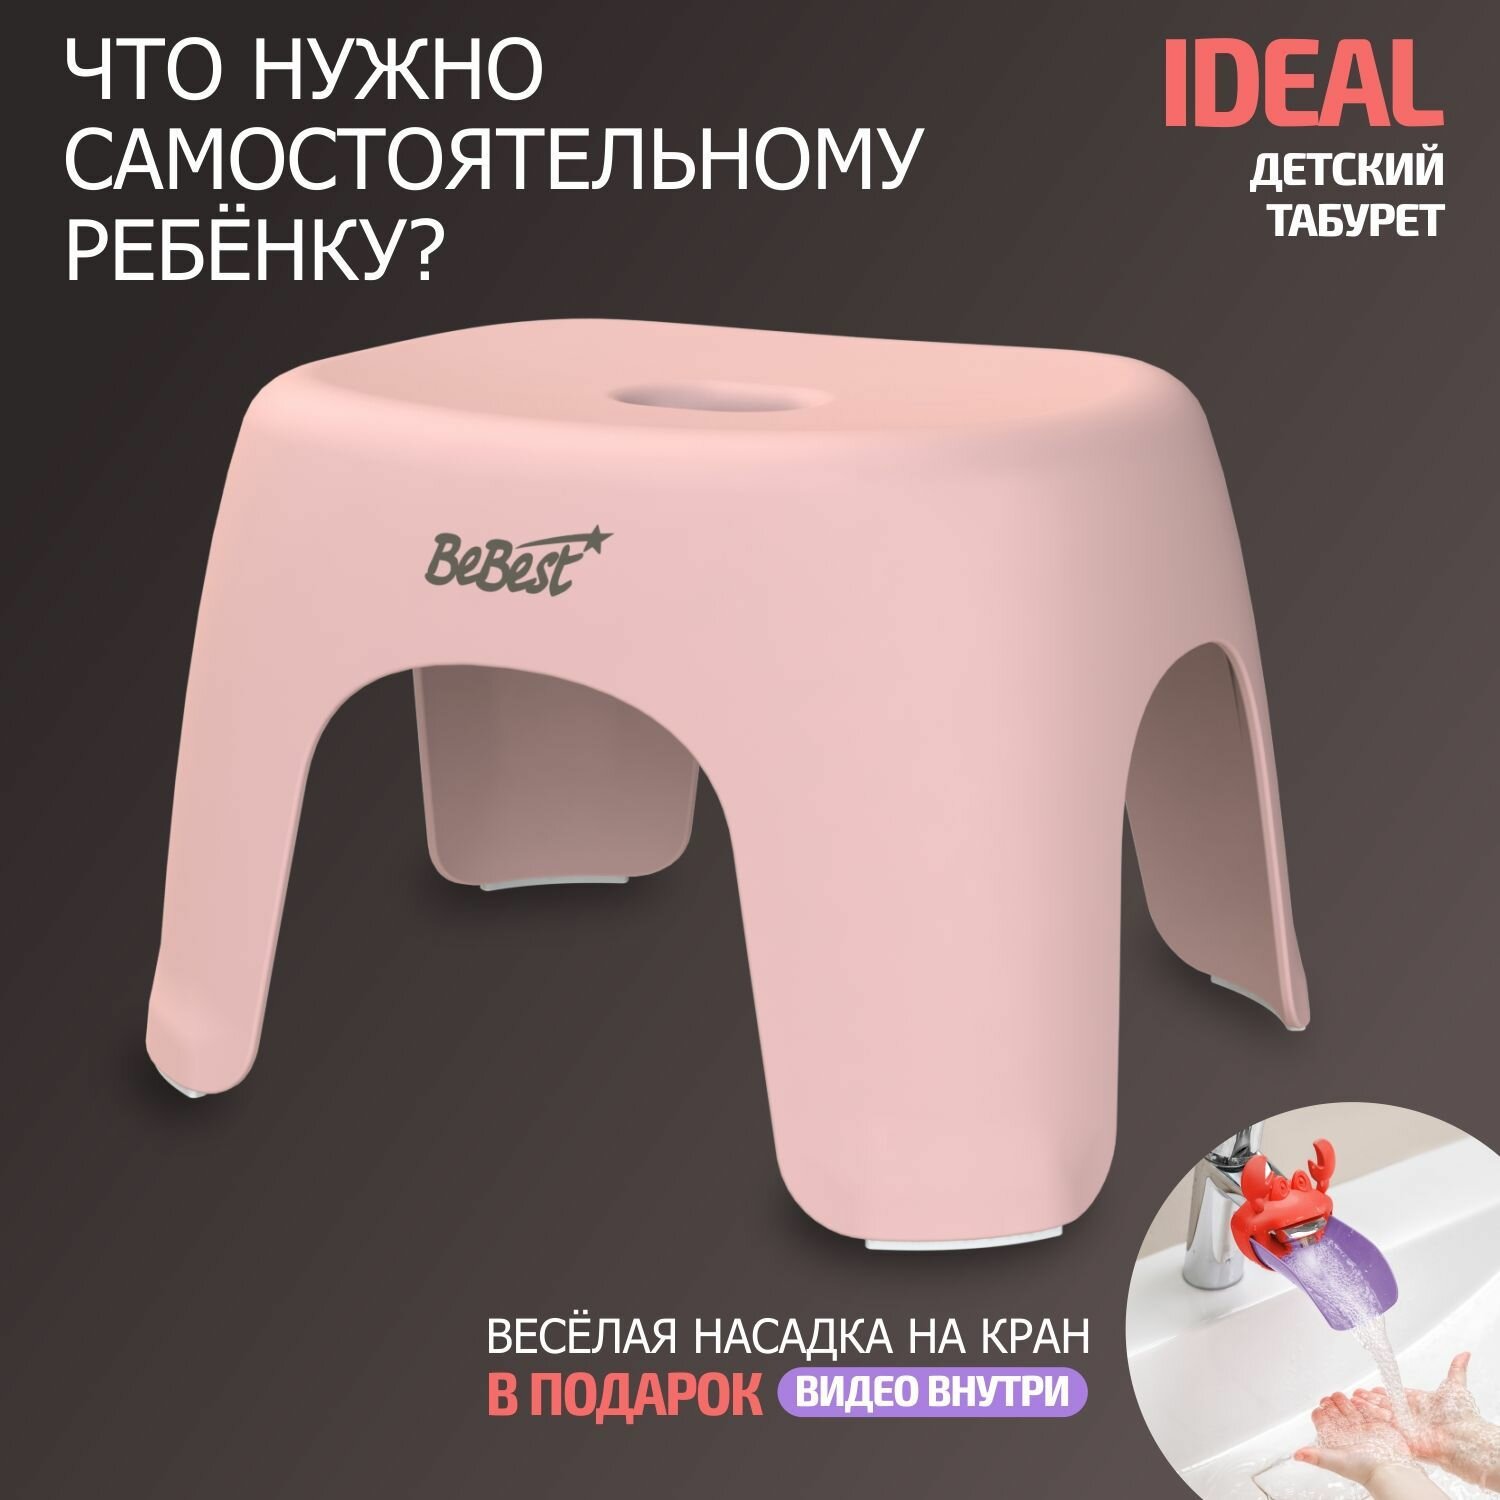 Табурет детский, стульчик, подставка для ног детская BeBest Ideal, розовый